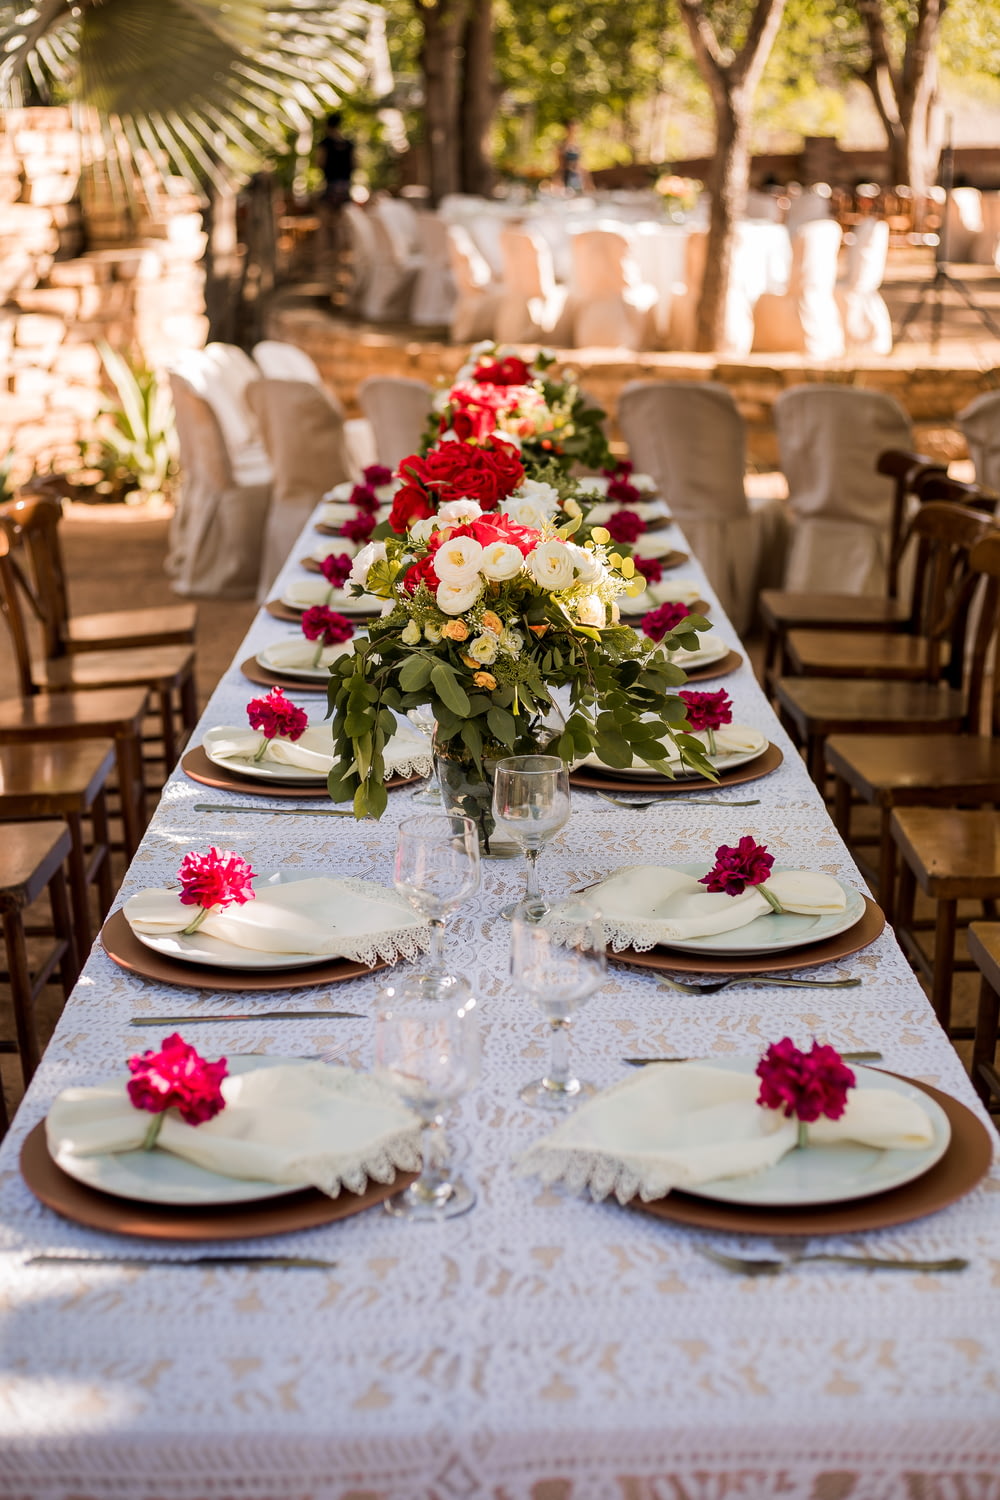 テーブルの上の白い陶器の皿に赤と白のバラ